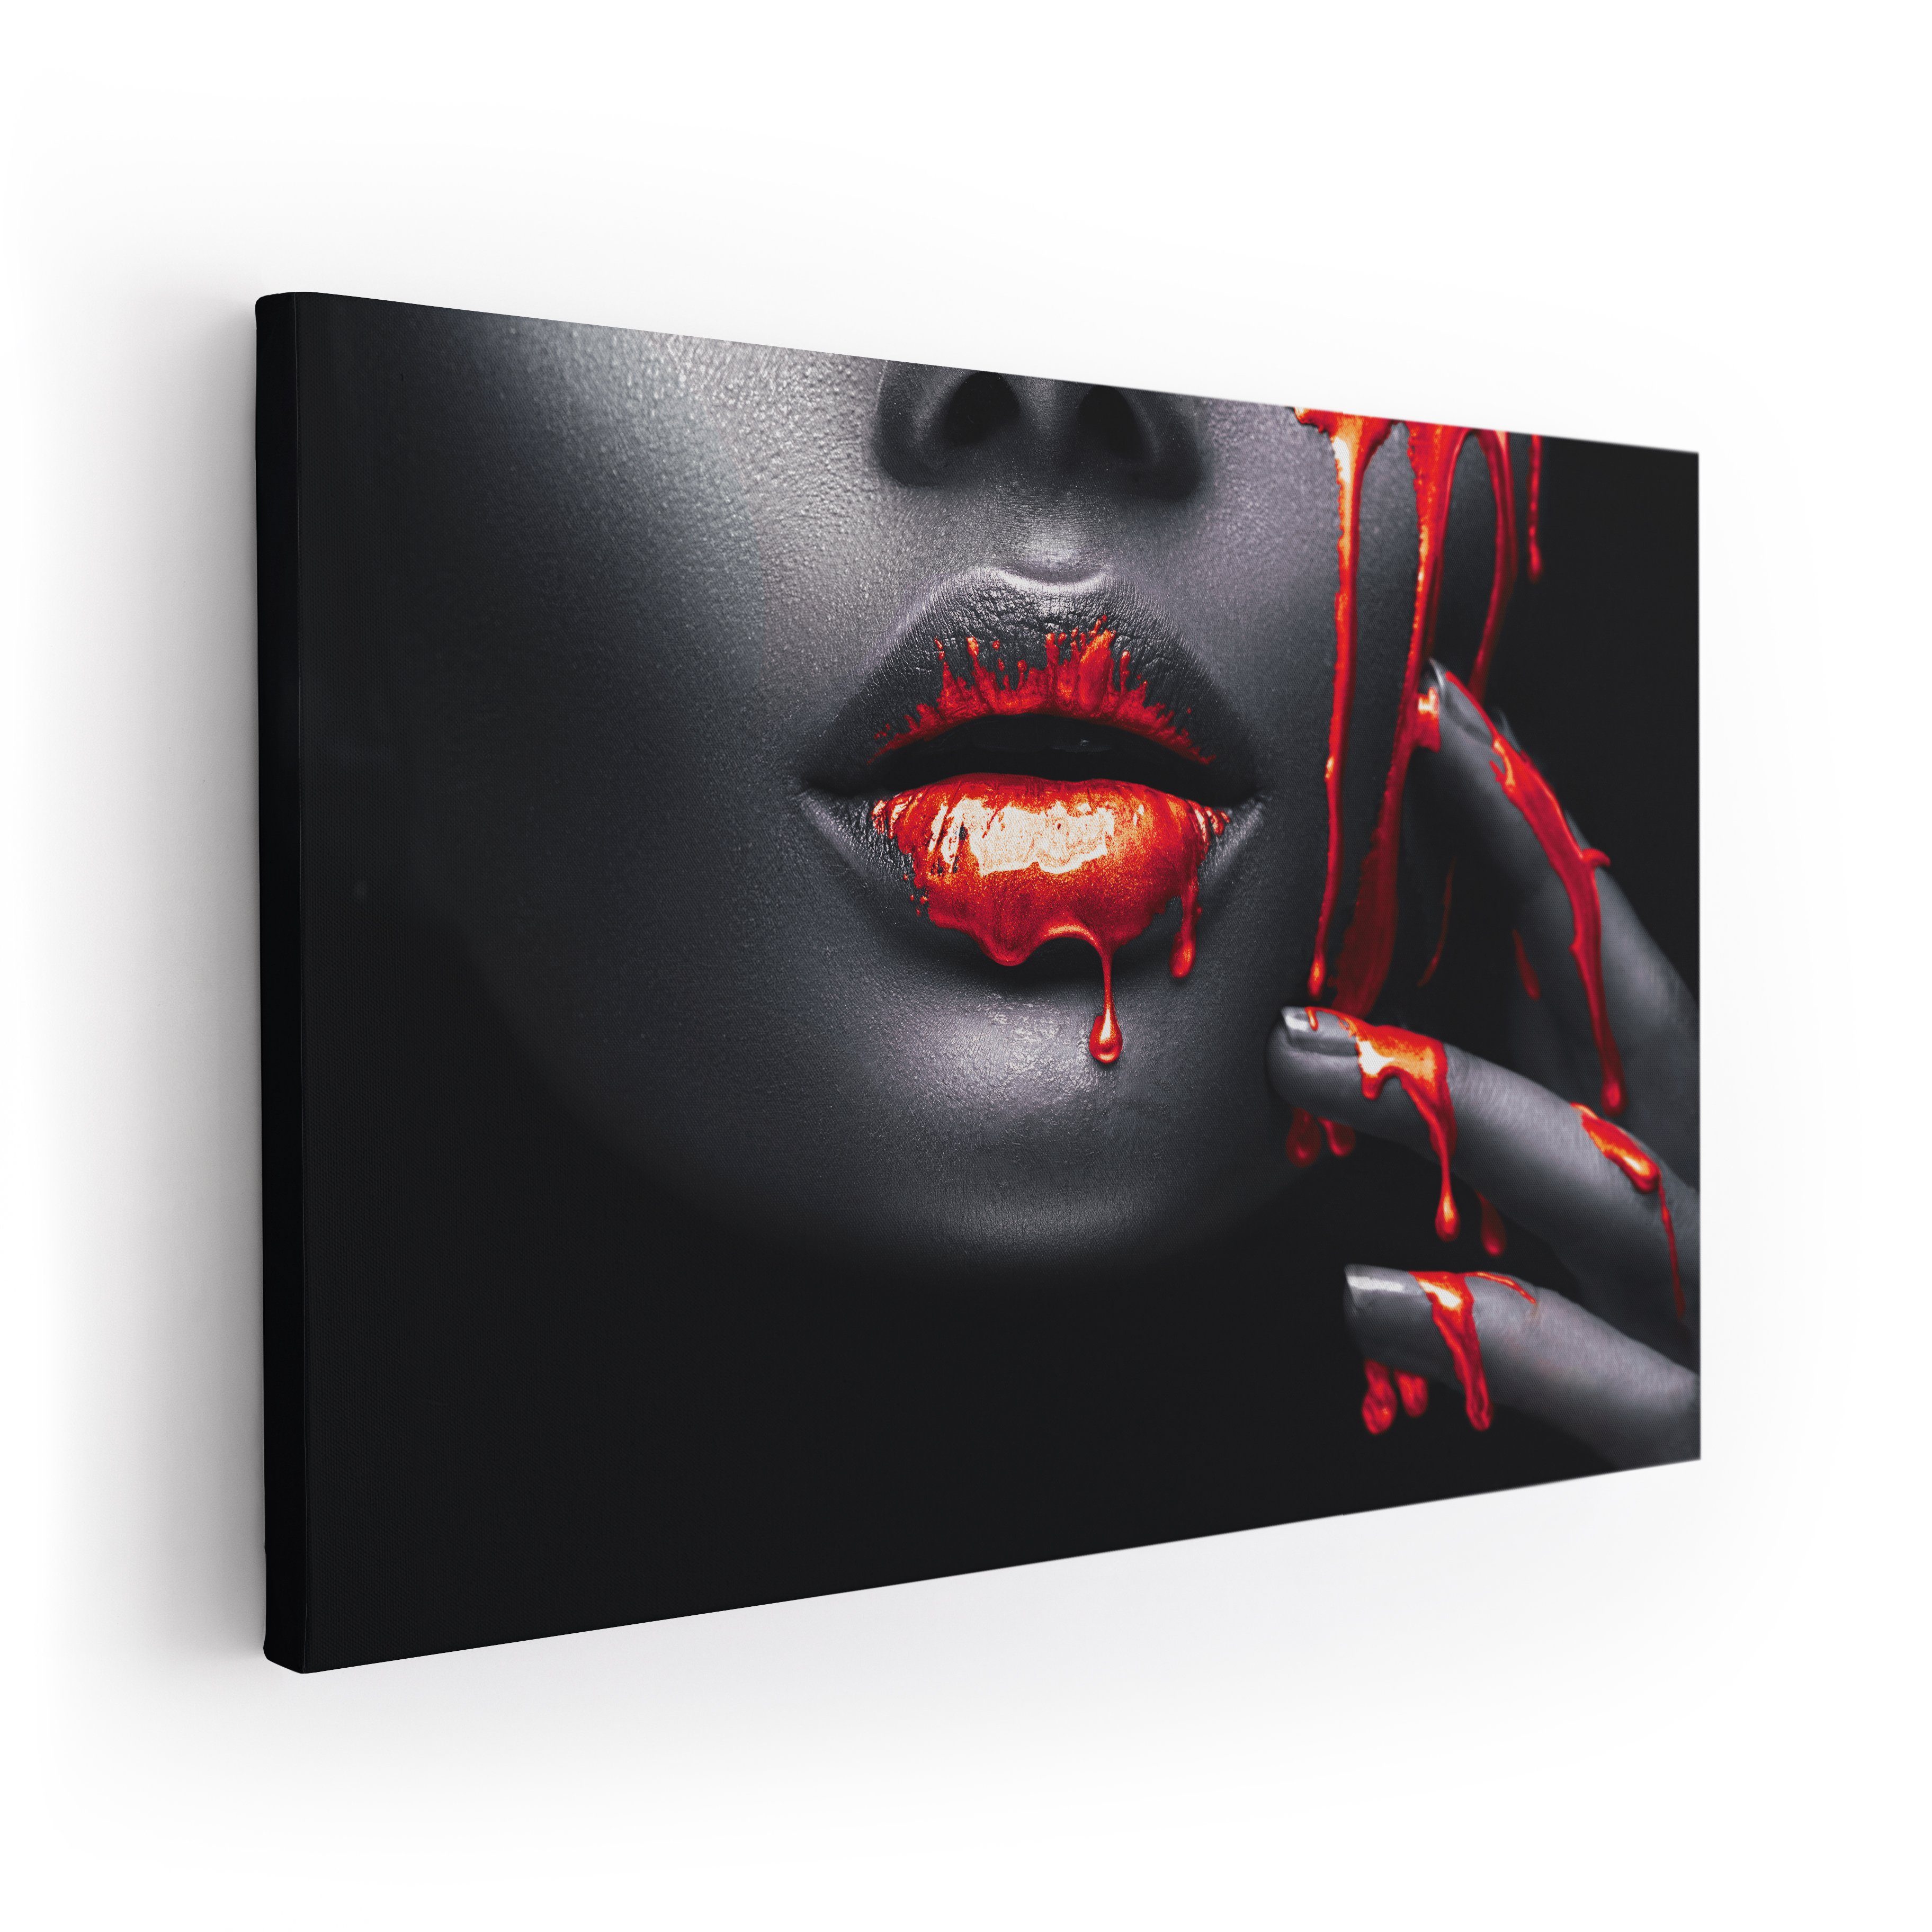 ArtMind XXL-Wandbild RED FACE, Premium Wandbilder als Poster & gerahmte Leinwand in verschiedenen Größen, Wall Art, Bild, Canva